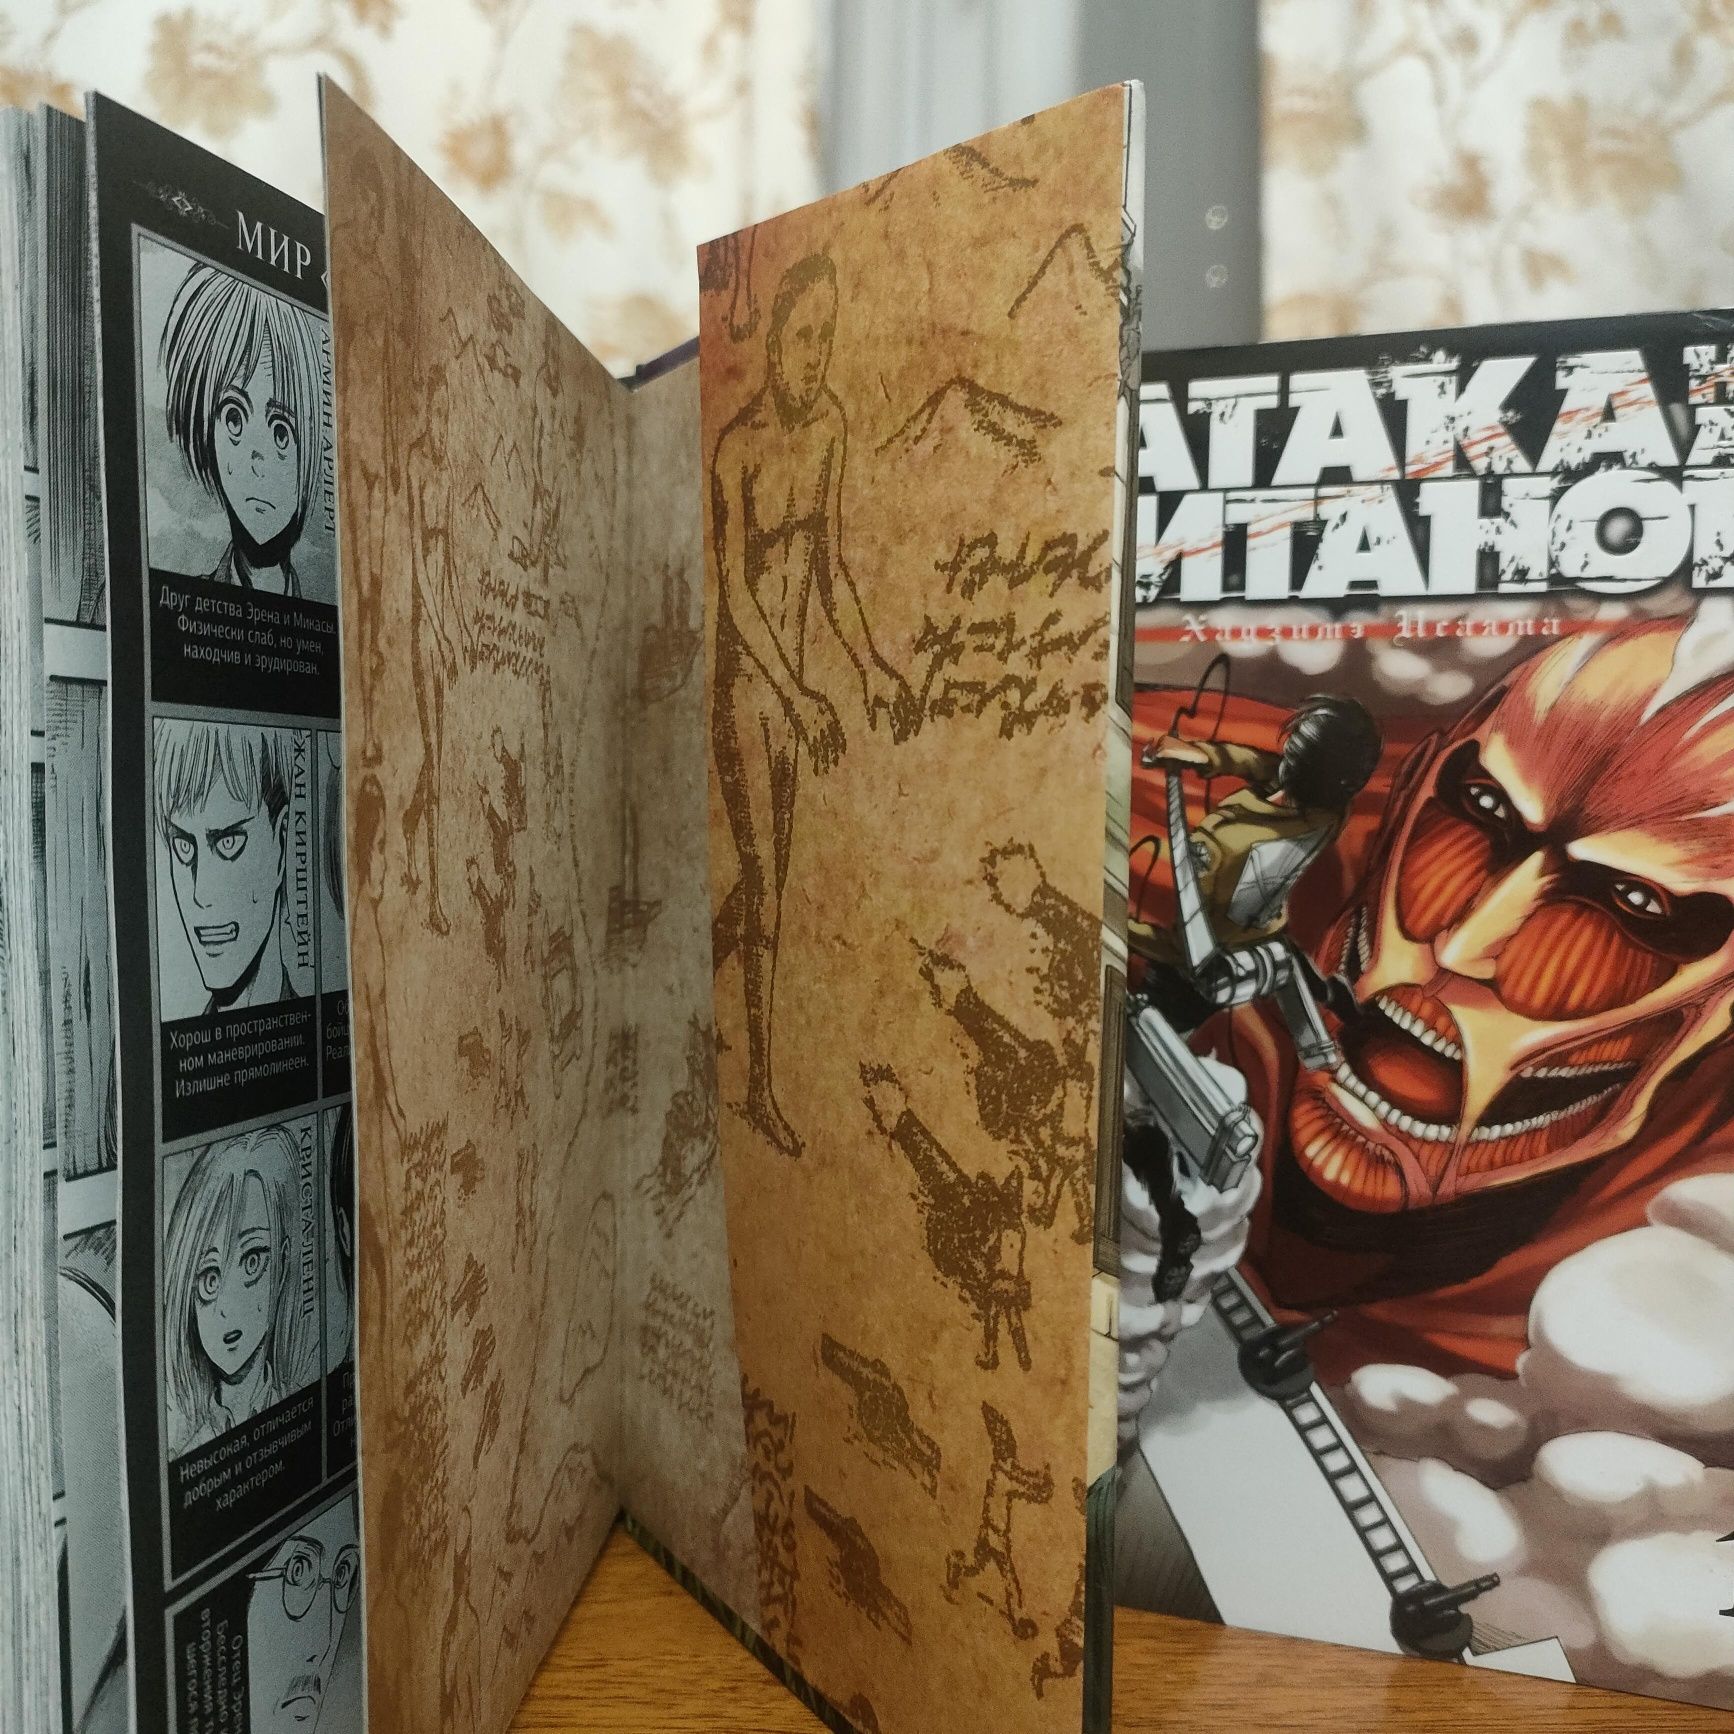 Манга Атака Титанов 1 и 3 том